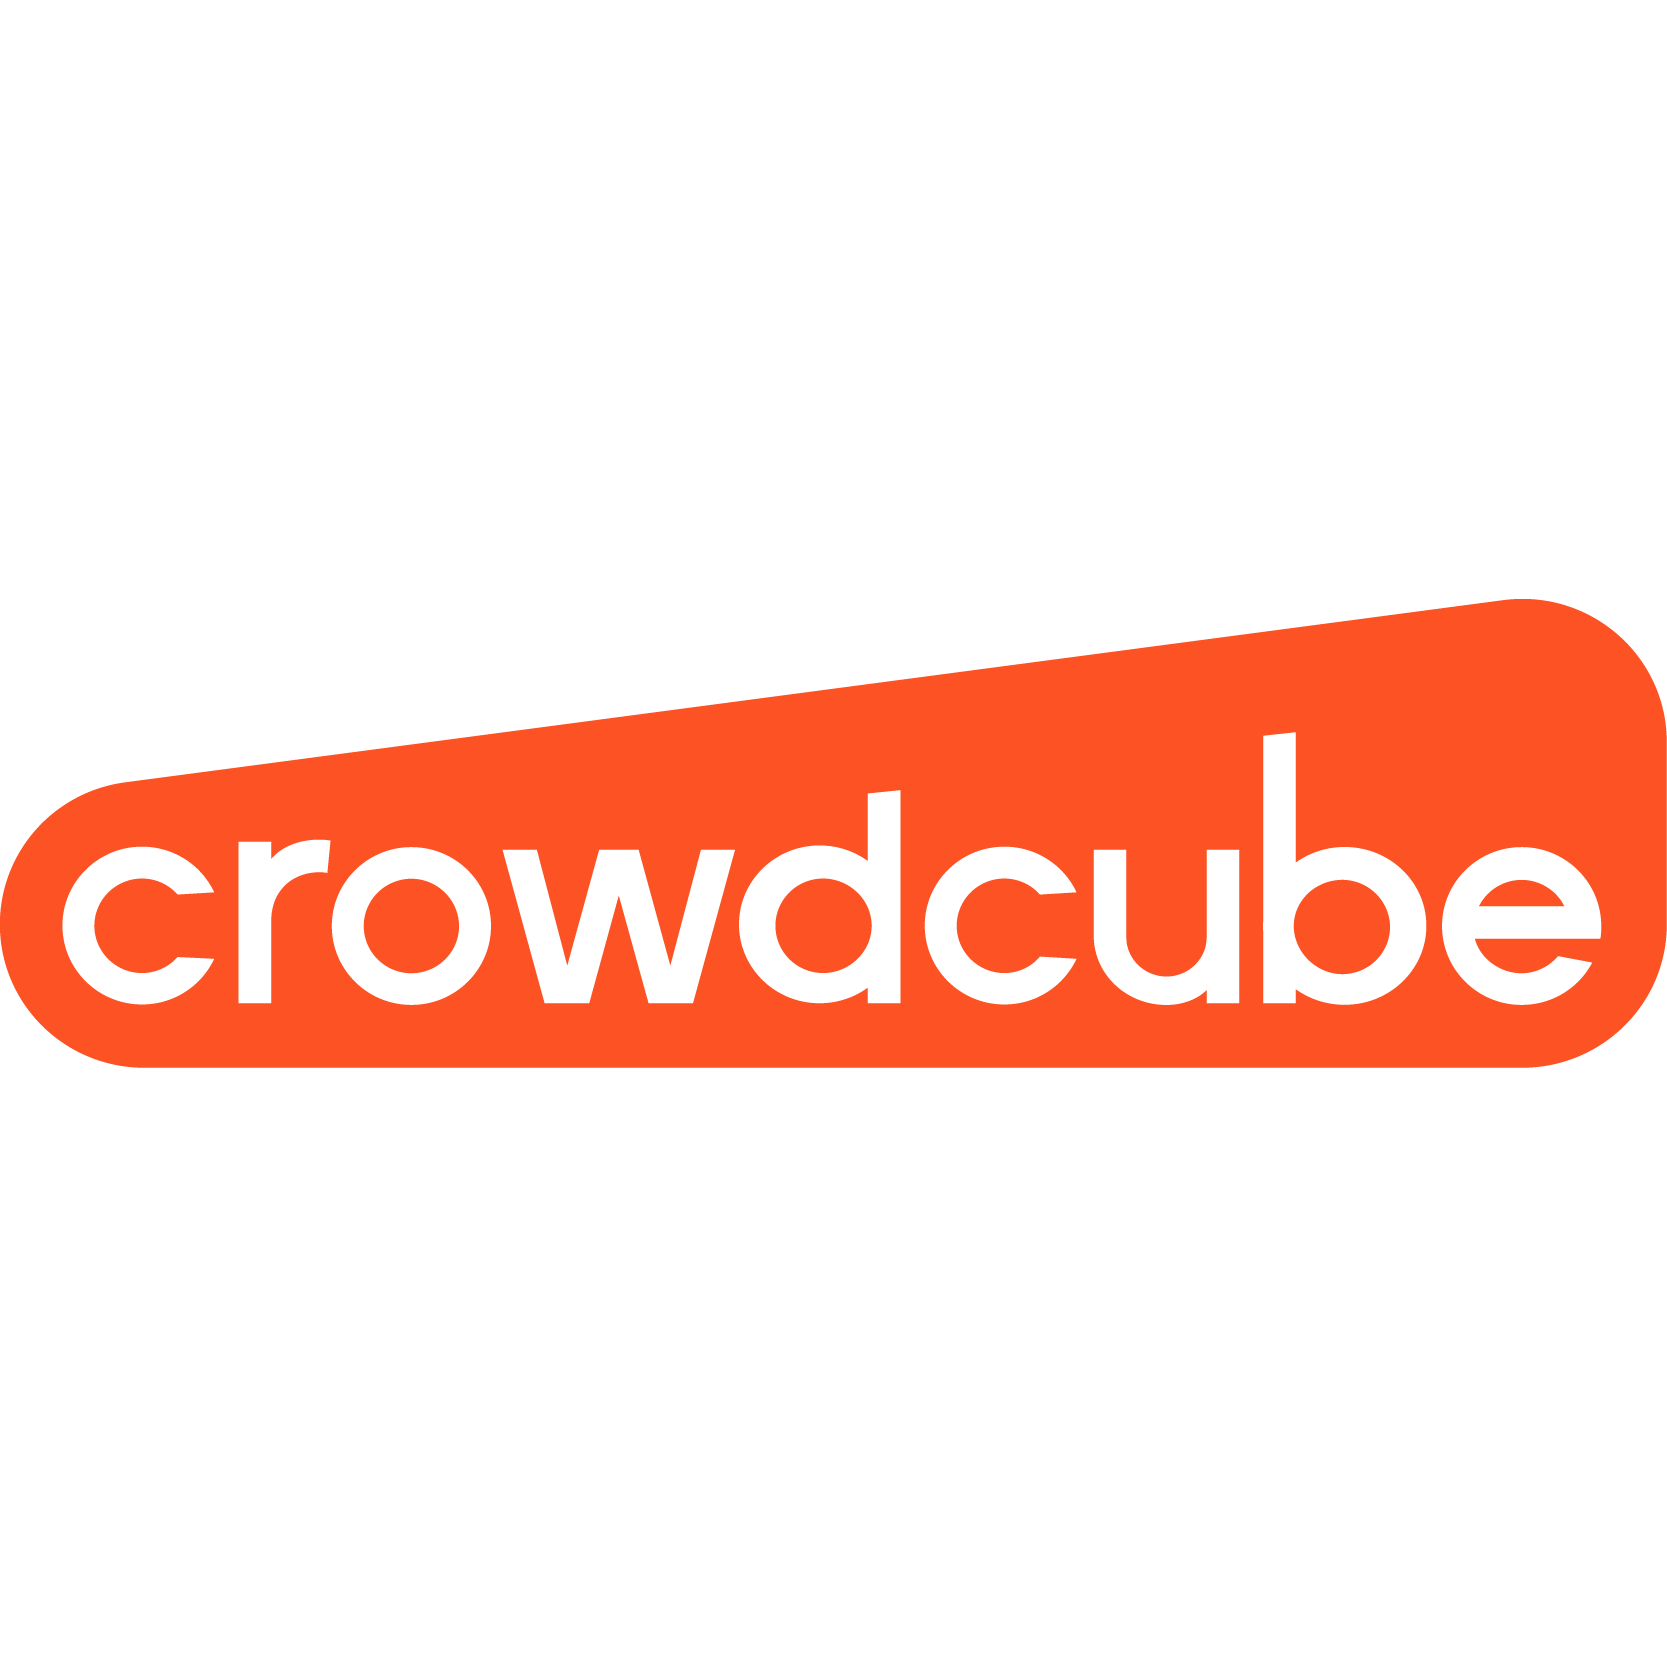 Crowdcube’s logo